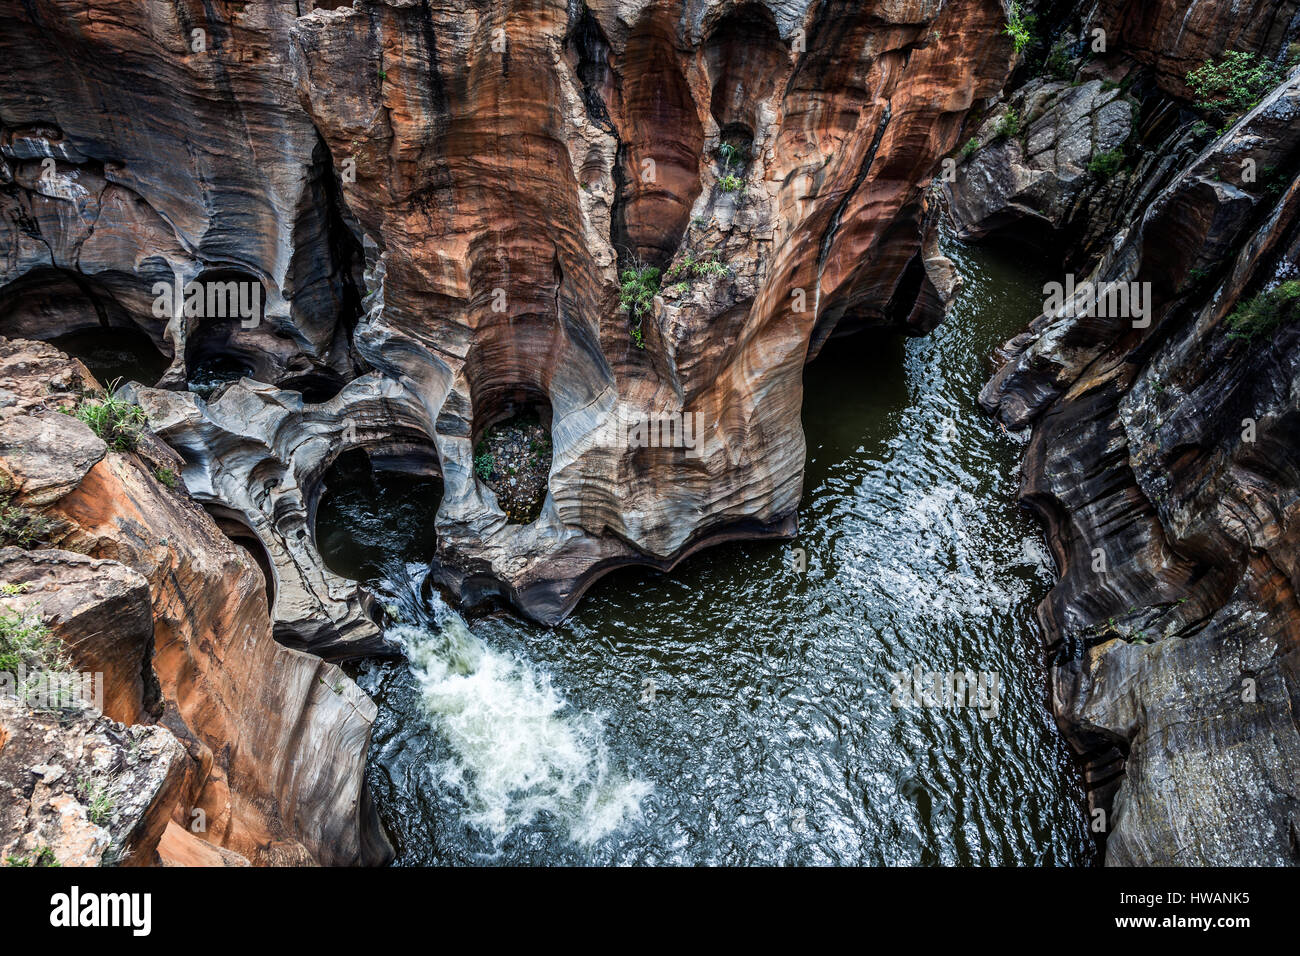 Bourke's Luck buche sul Panorama Route in Sud Africa sono uno splendido esempio di erosione di roccia - un paesaggio formato da migliaia di anni. Foto Stock